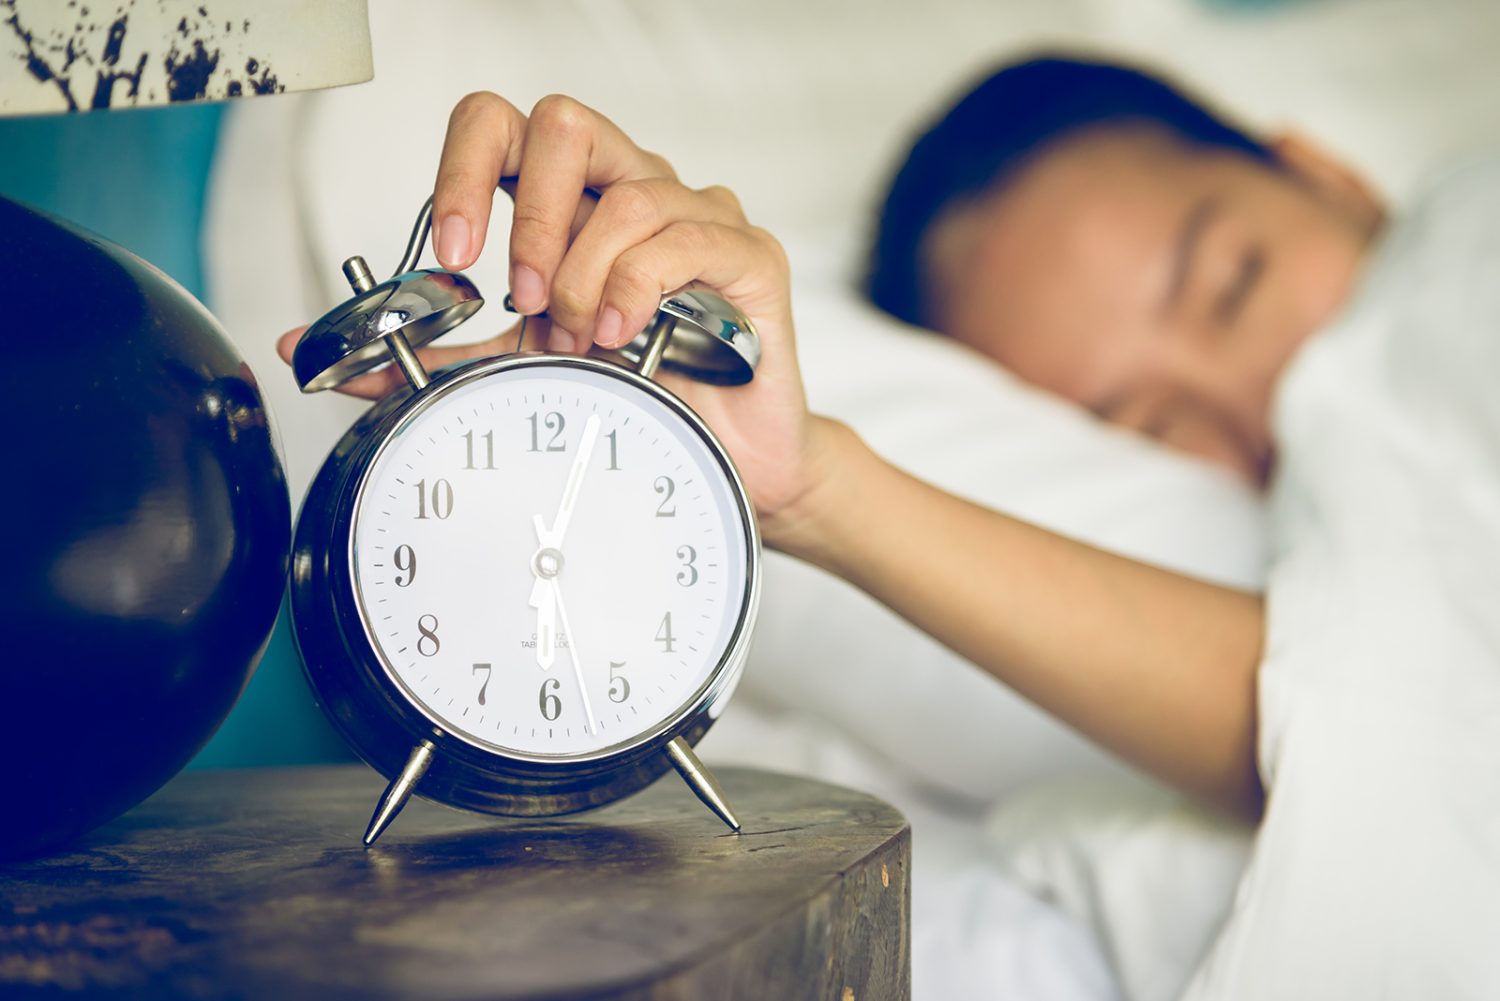 Establece un horario regular de sueño